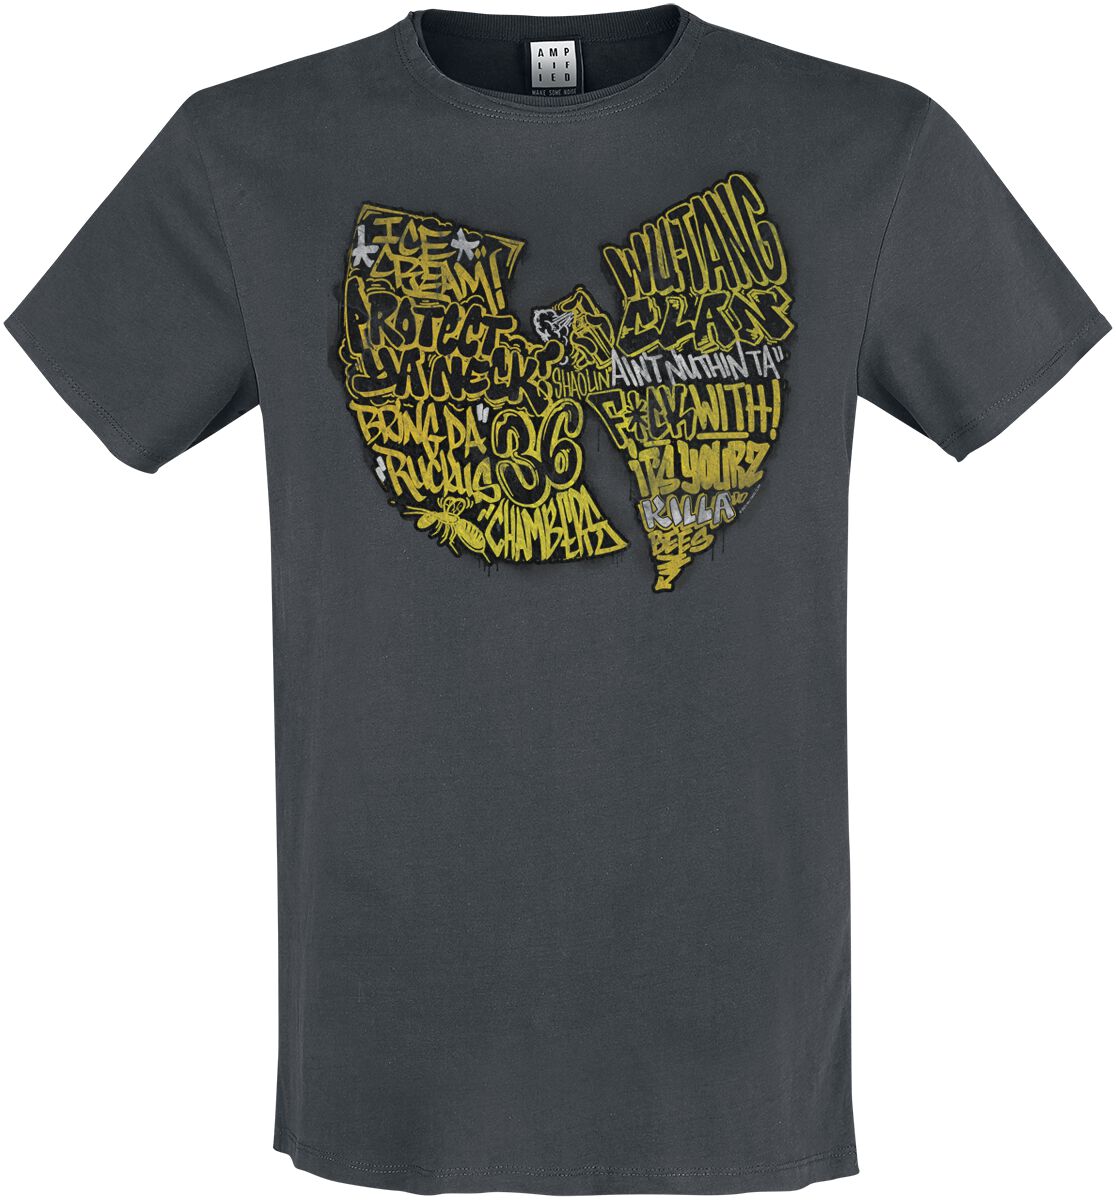 Wu-Tang Clan T-Shirt - Amplified Collection - Graffiti Logo - S bis 3XL - für Männer - Größe XXL - charcoal  - Lizenziertes Merchandise!